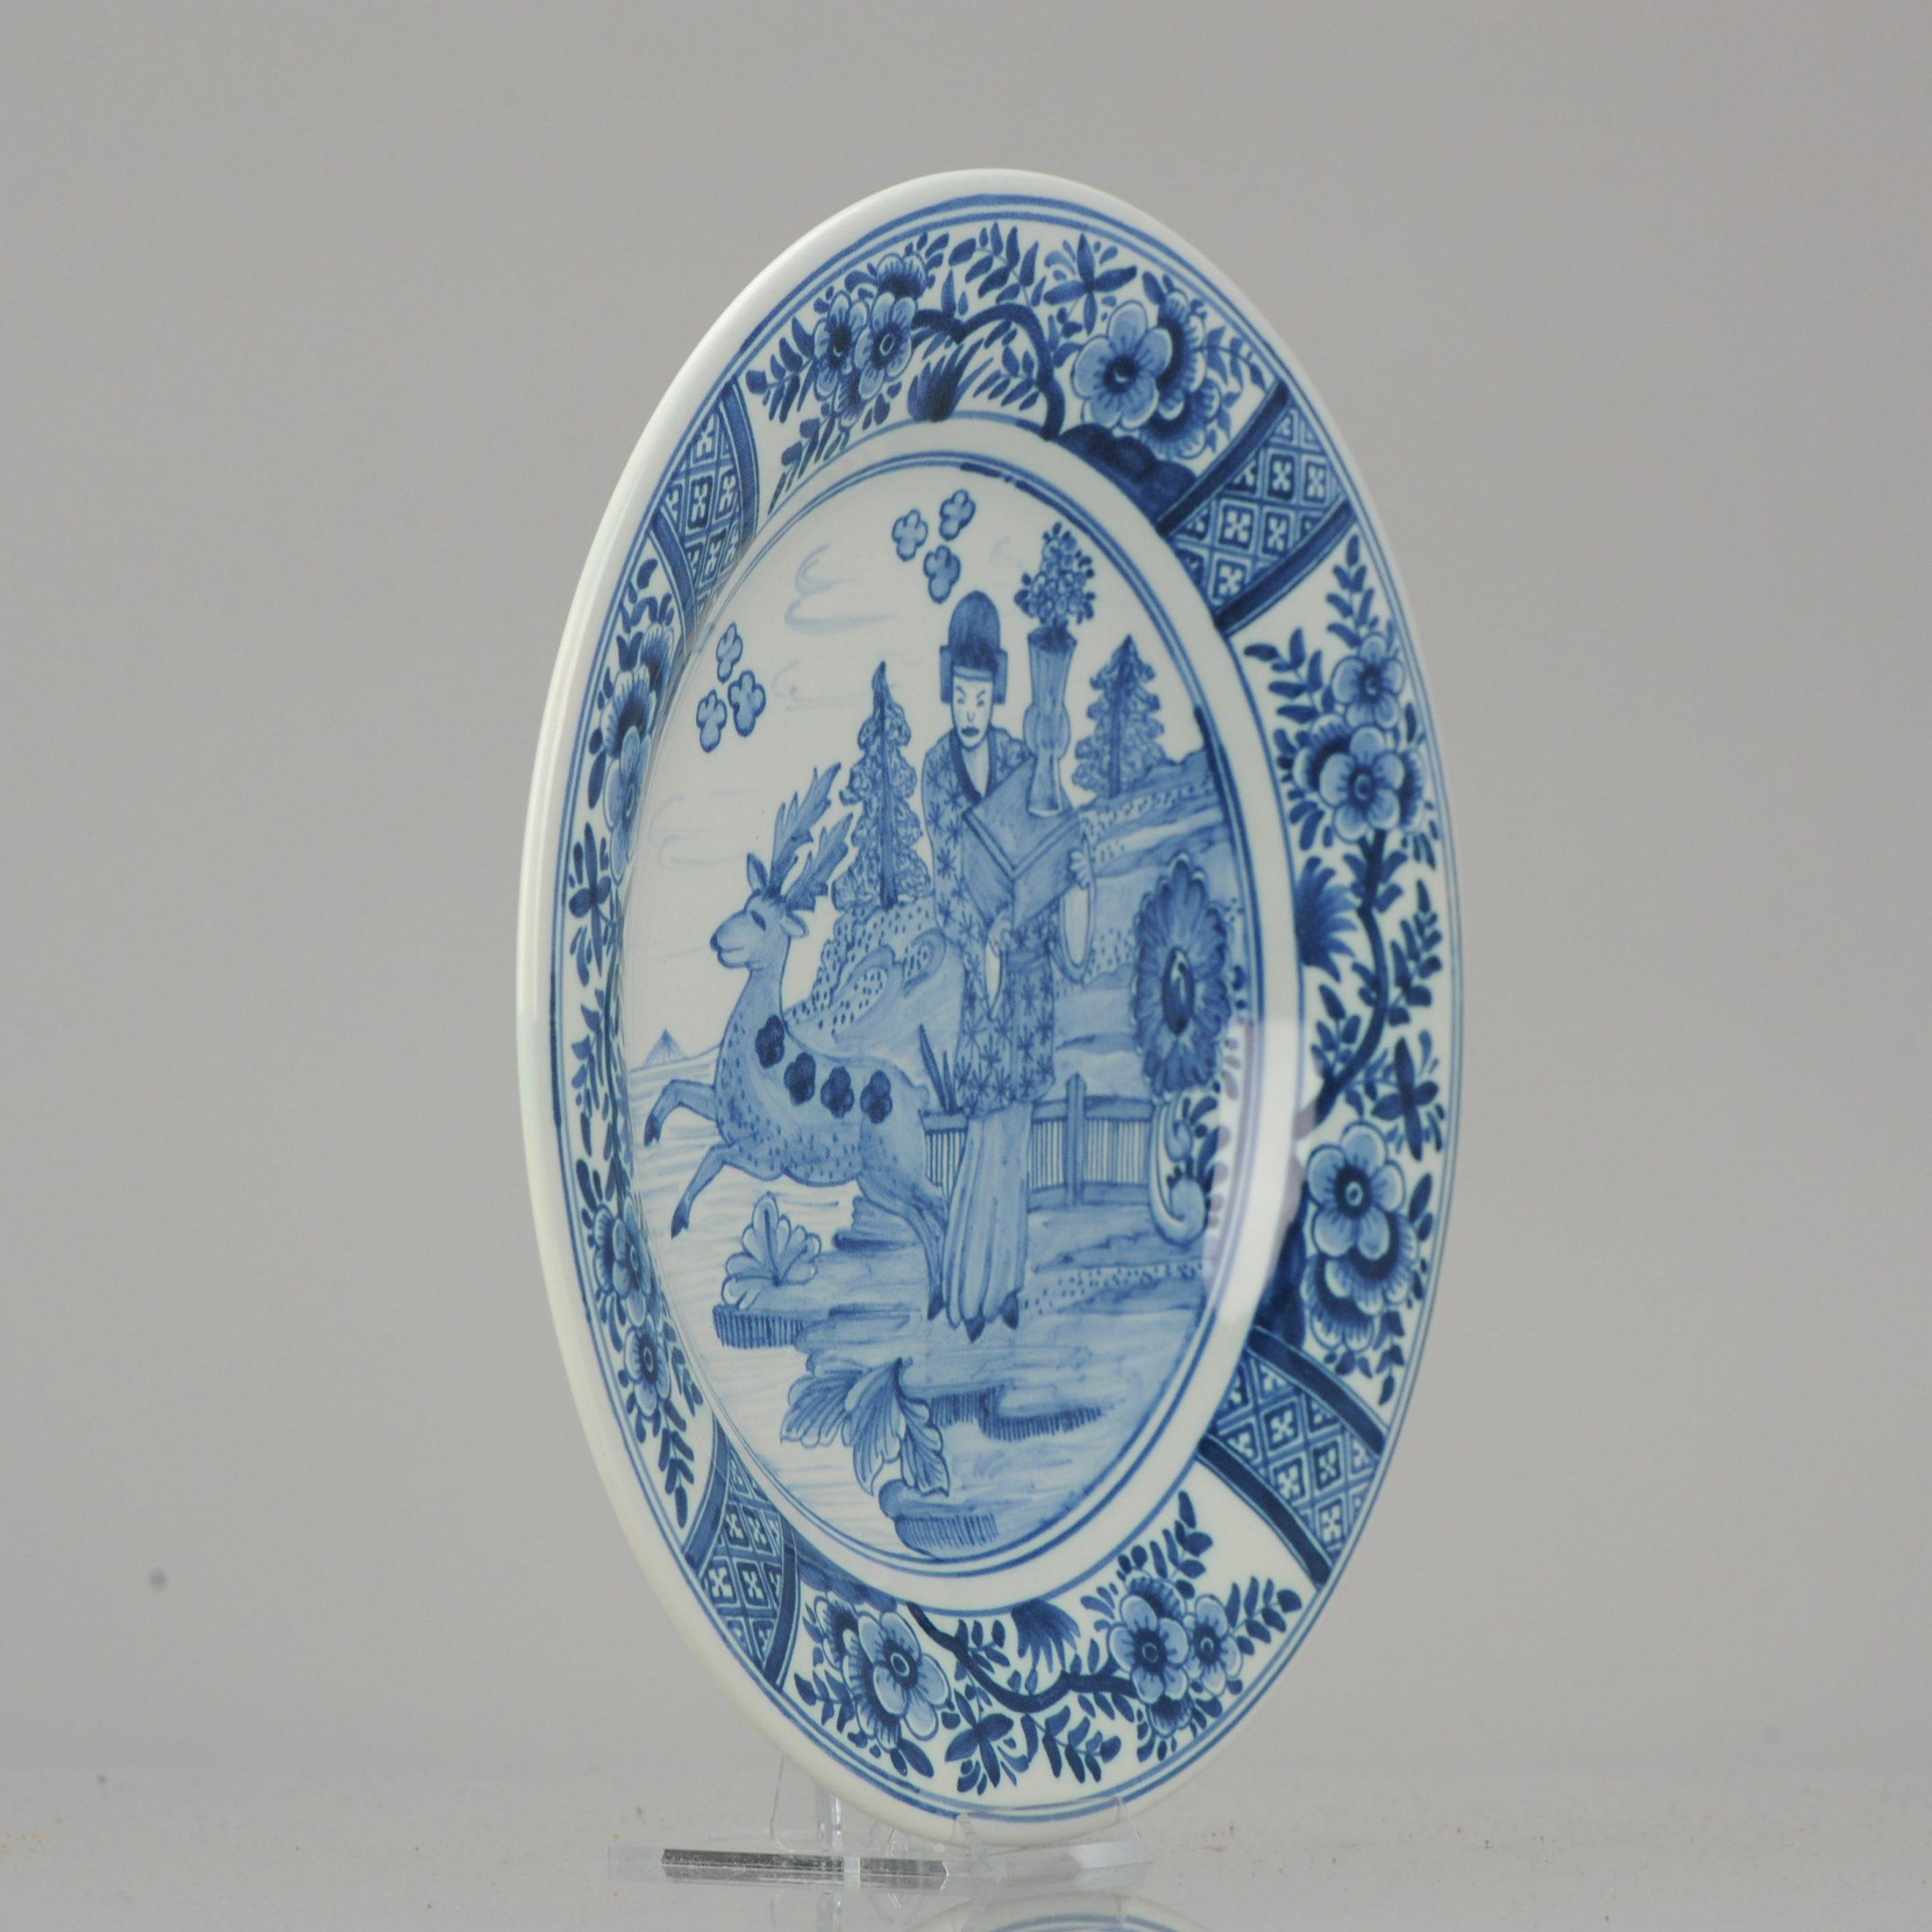 Schöner Teller aus niederländischer Delfter Keramik. 20. Jahrhundert. Eine traditionelle chinesische Szene. Die niederländische Delfter Porzellanmanufaktur basierte auf chinesischem Porzellan, und viele Szenen wurden lose von Szenen auf chinesischem